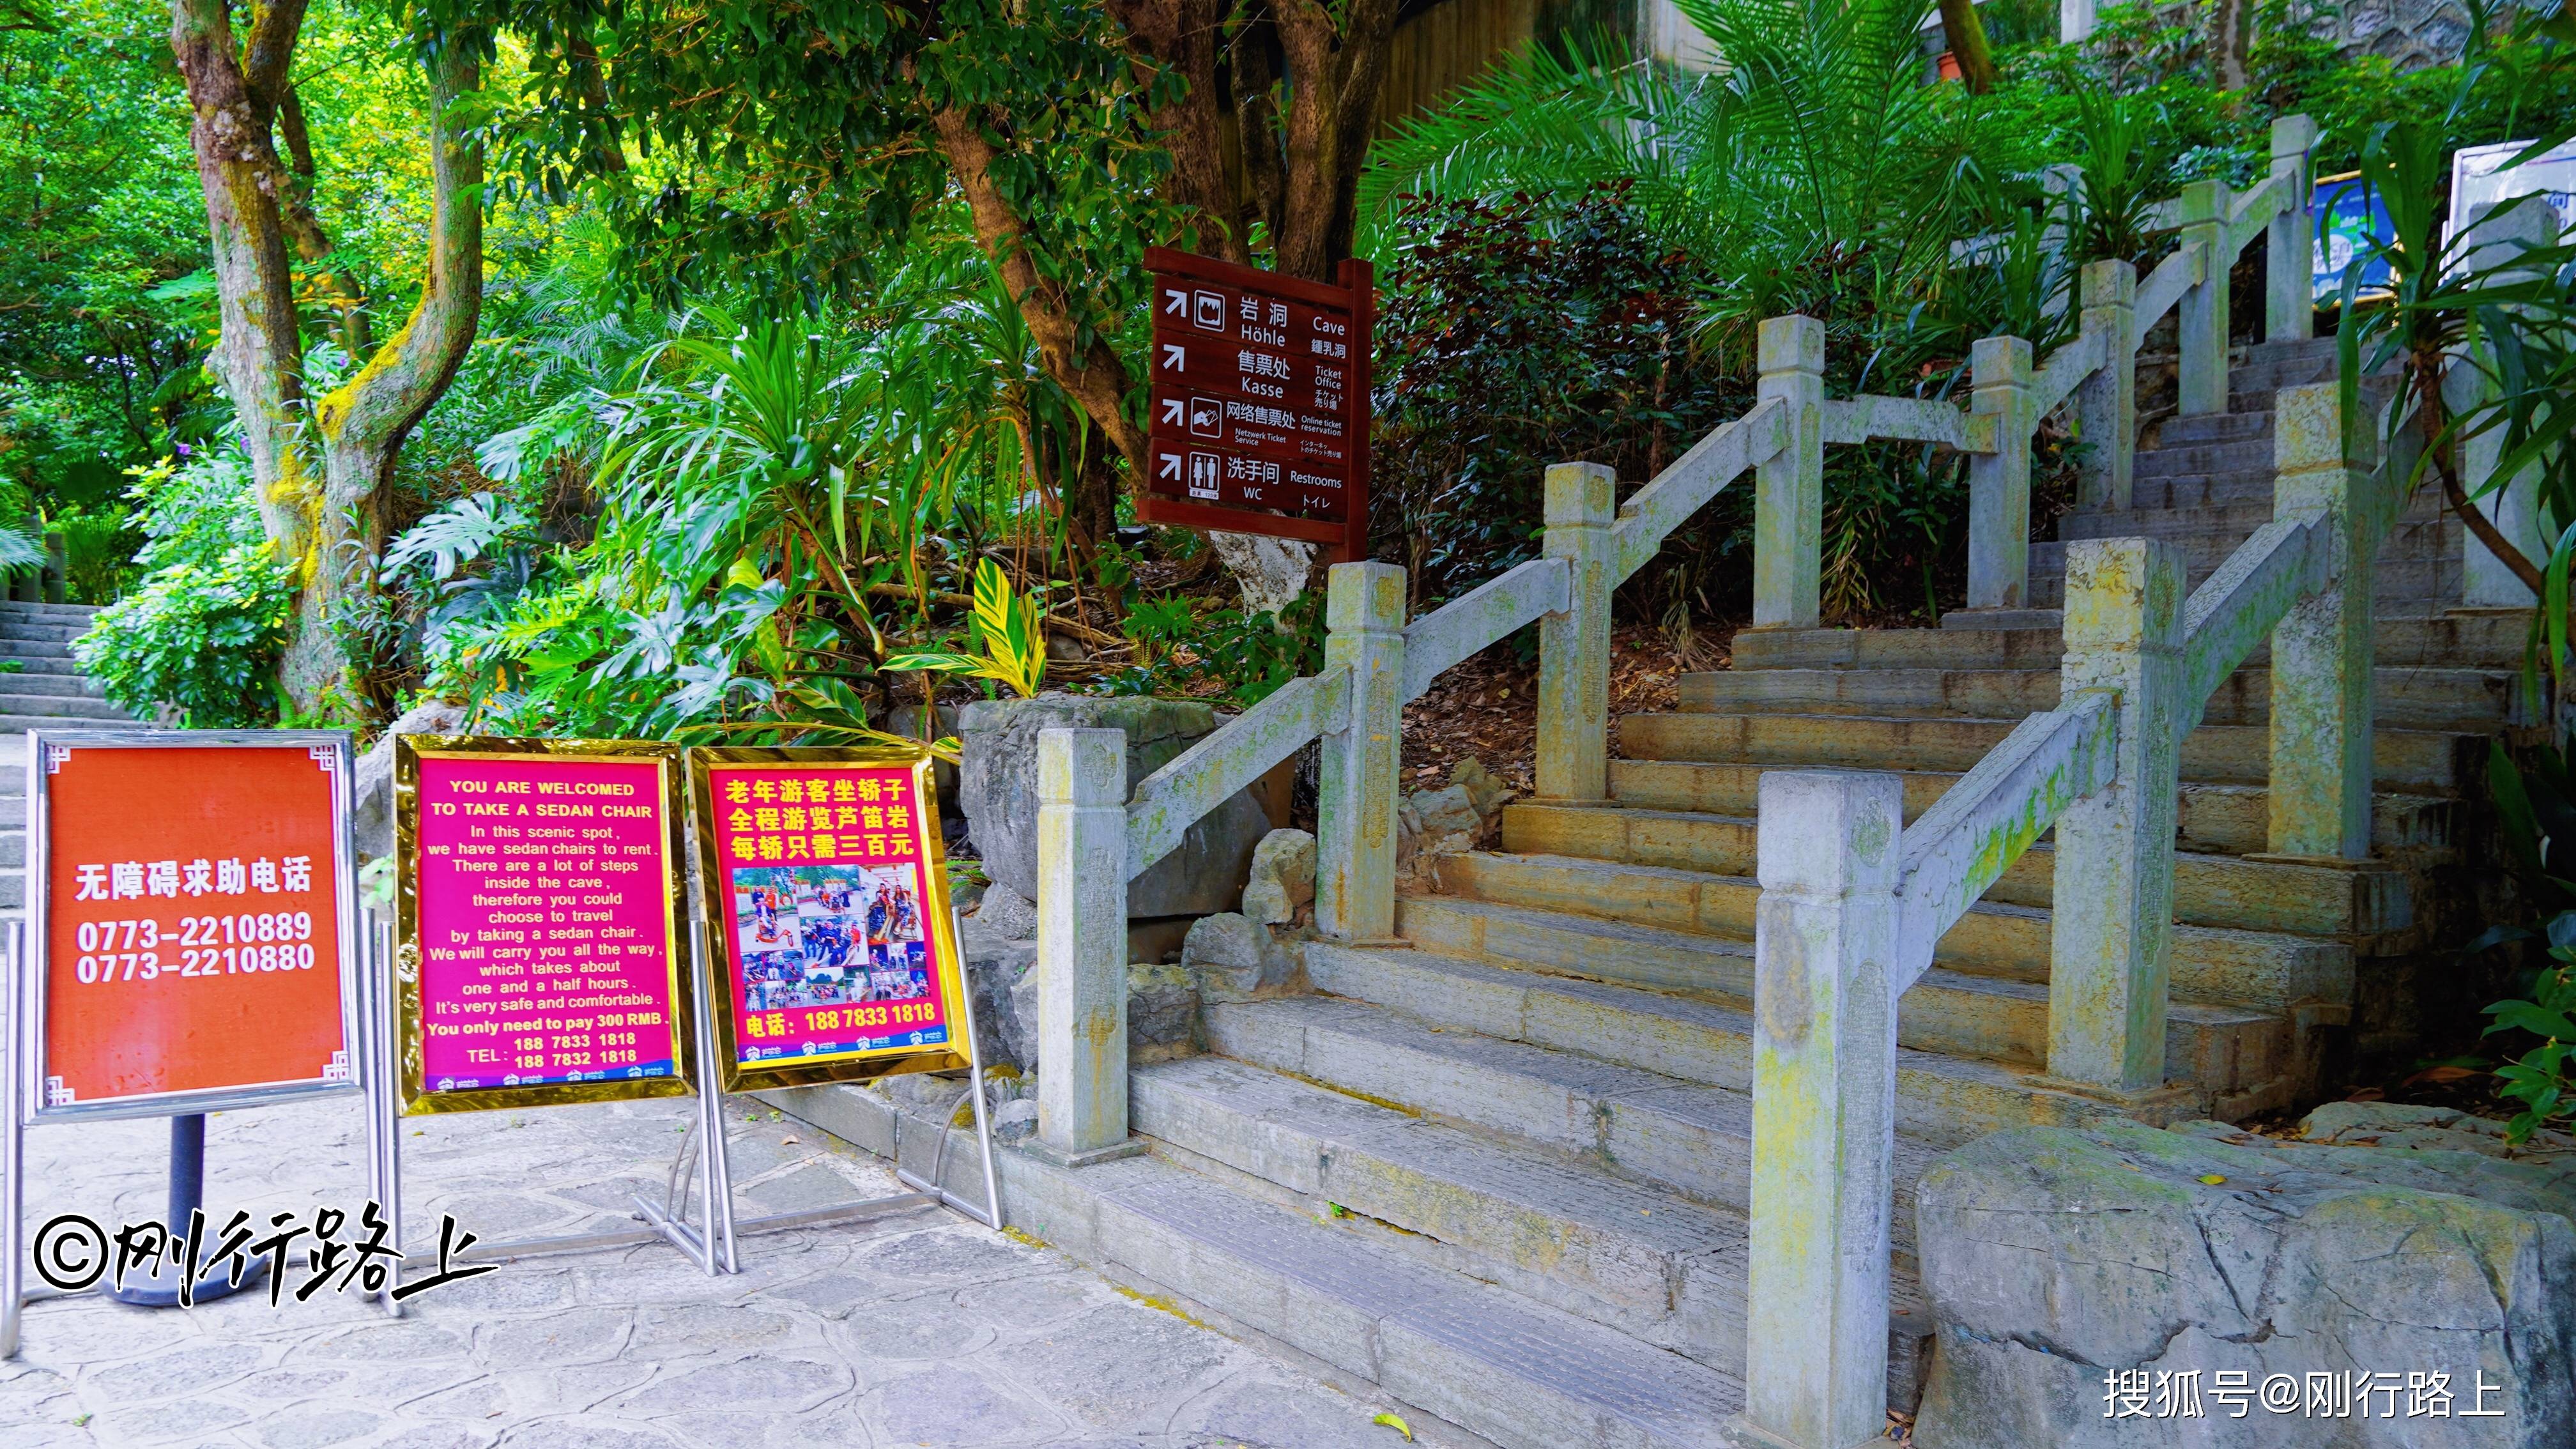 芦笛岩景区：被誉为“大自然艺术之宫”，美景堪称最佳